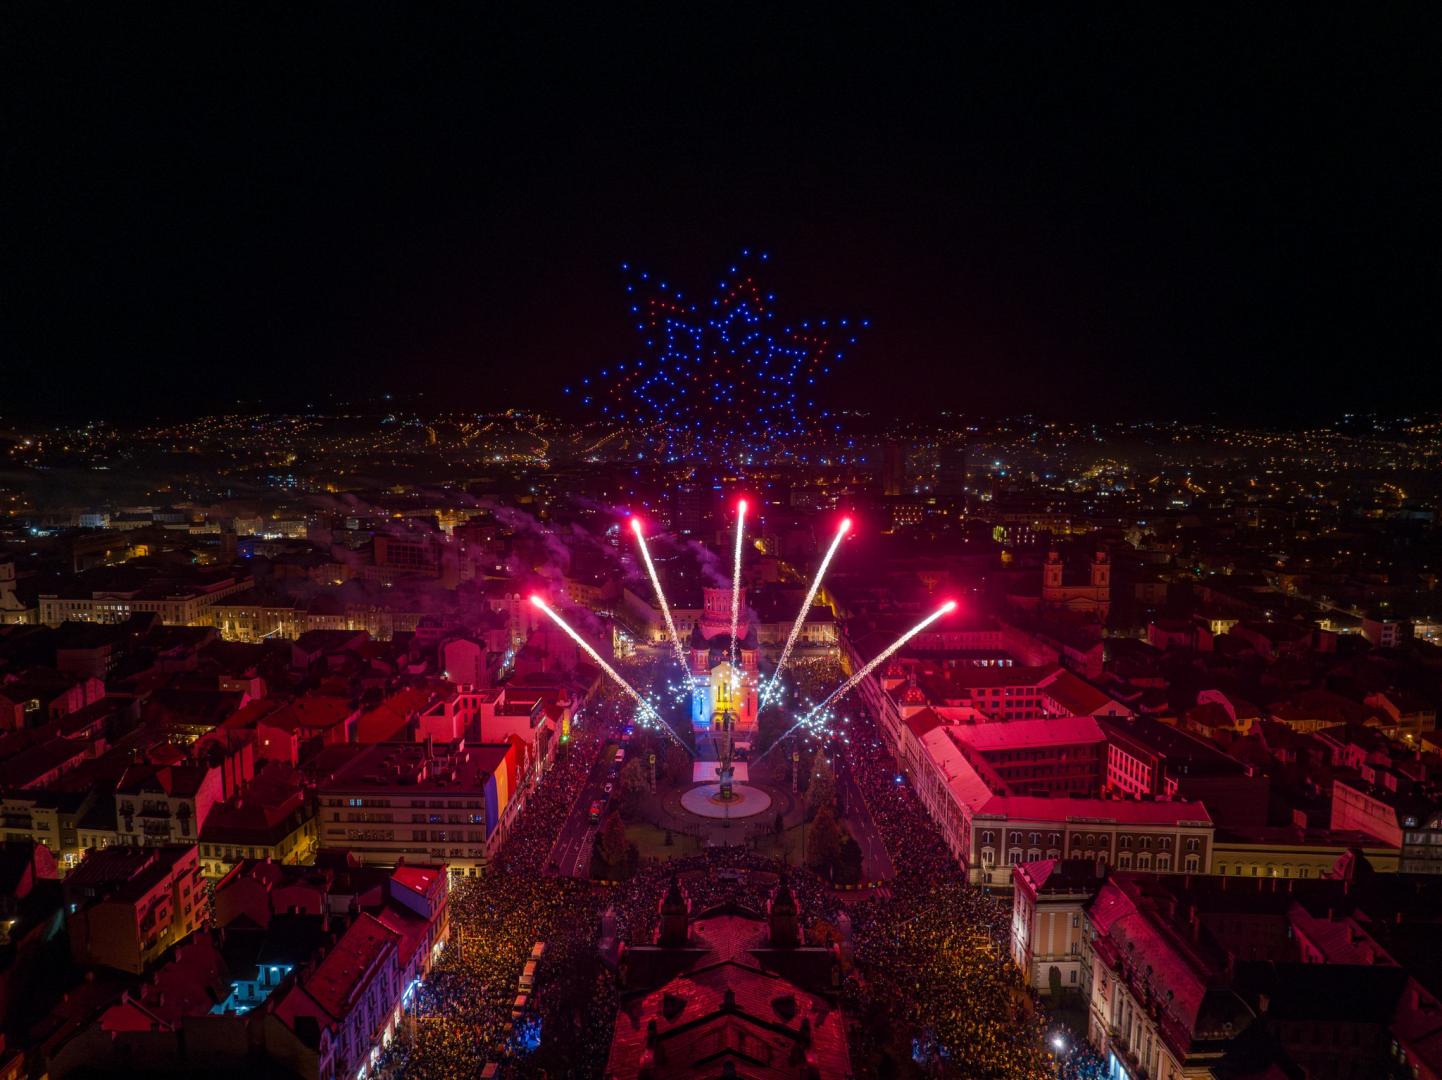 Peste 100.000 de clujeni și turiști au sărbătorit împreună Ziua Națională a României la Cluj-Napoca